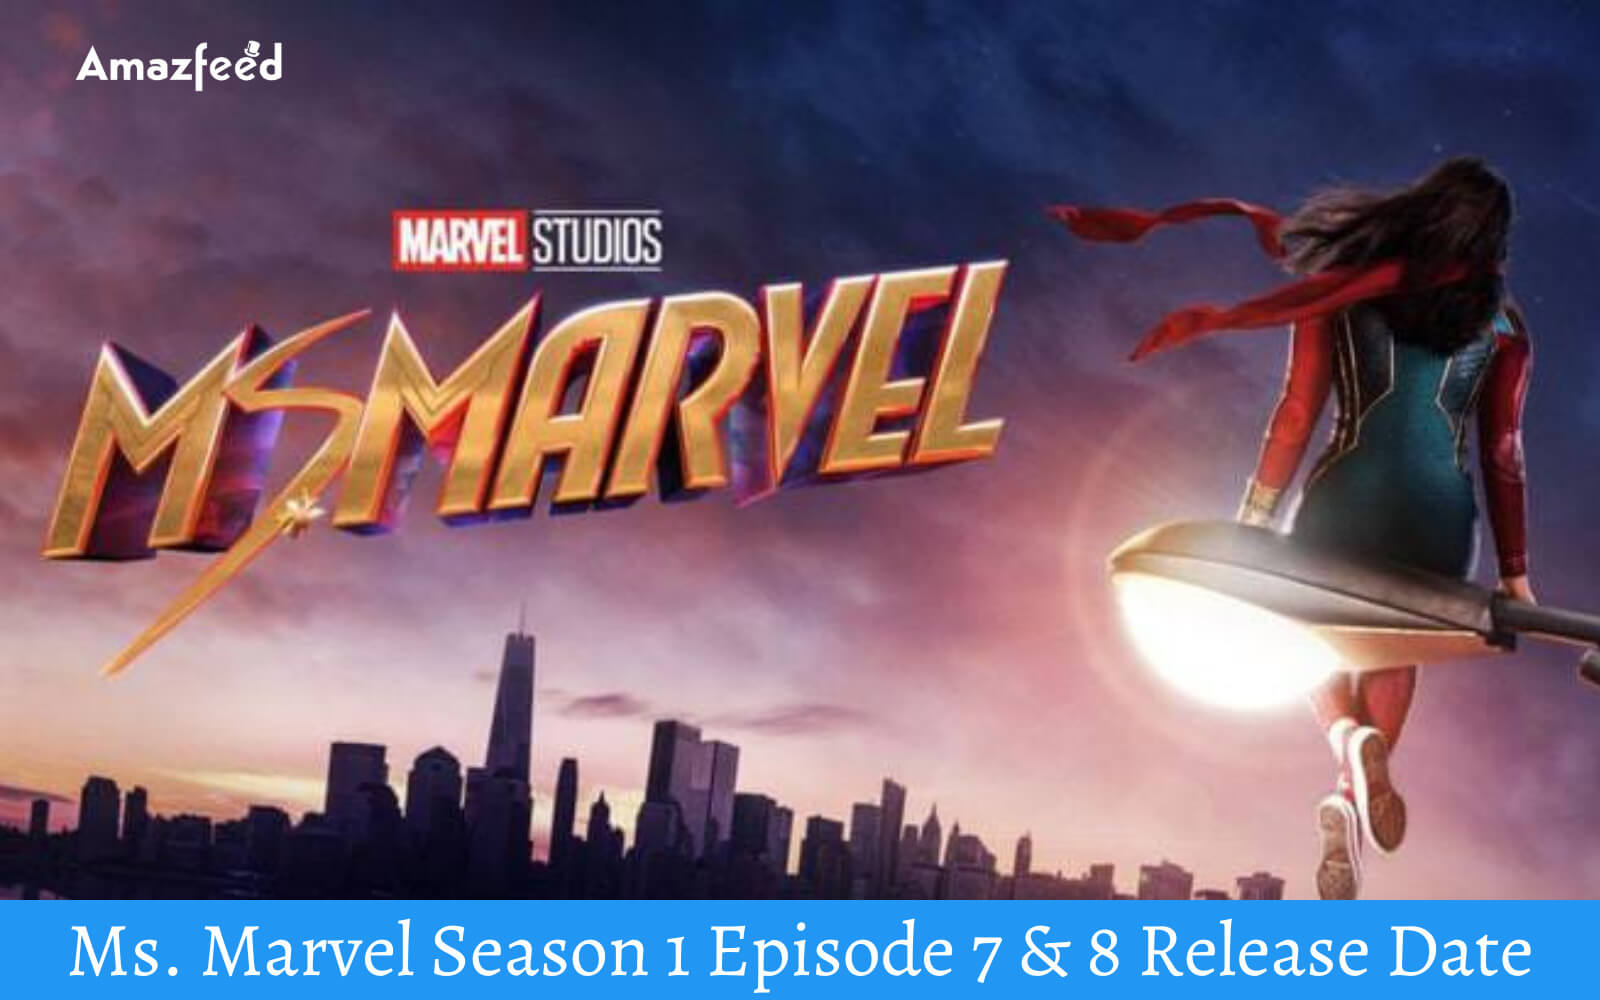 Ms. Marvel Season 1 Episode 7 & 8 Release Date